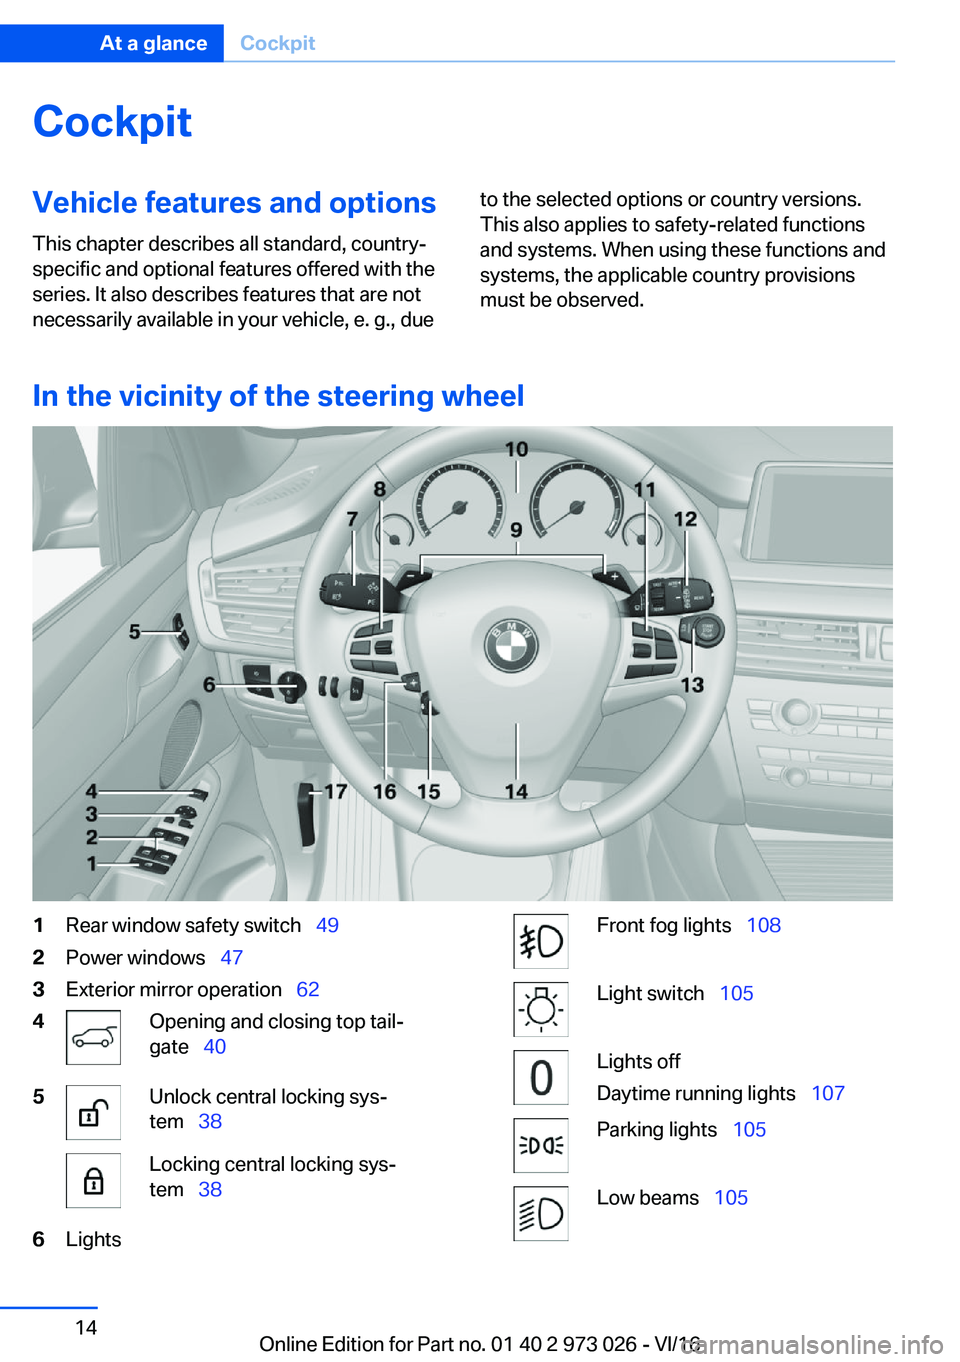 BMW X5 2017 User Guide �C�o�c�k�p�i�t�V�e�h�i�c�l�e��f�e�a�t�u�r�e�s��a�n�d��o�p�t�i�o�n�s
�T�h�i�s� �c�h�a�p�t�e�r� �d�e�s�c�r�i�b�e�s� �a�l�l� �s�t�a�n�d�a�r�d�,� �c�o�u�n�t�r�y�- �s�p�e�c�i�f�i�c� �a�n�d� �o�p�t�i�o�n